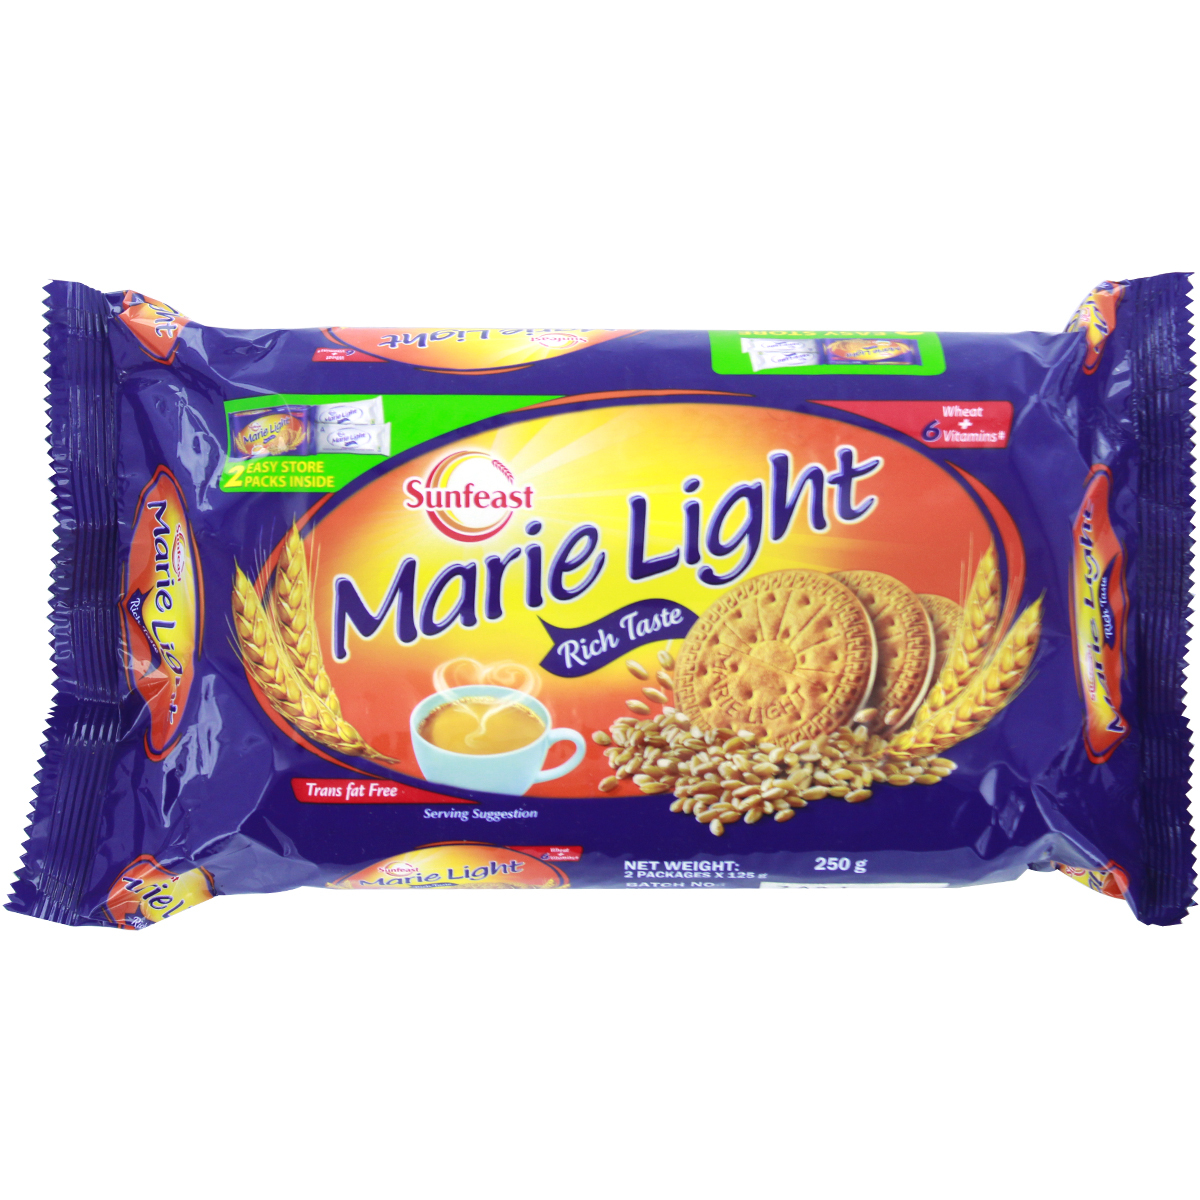 Sunfeast Marie Light Biscuits 243gm